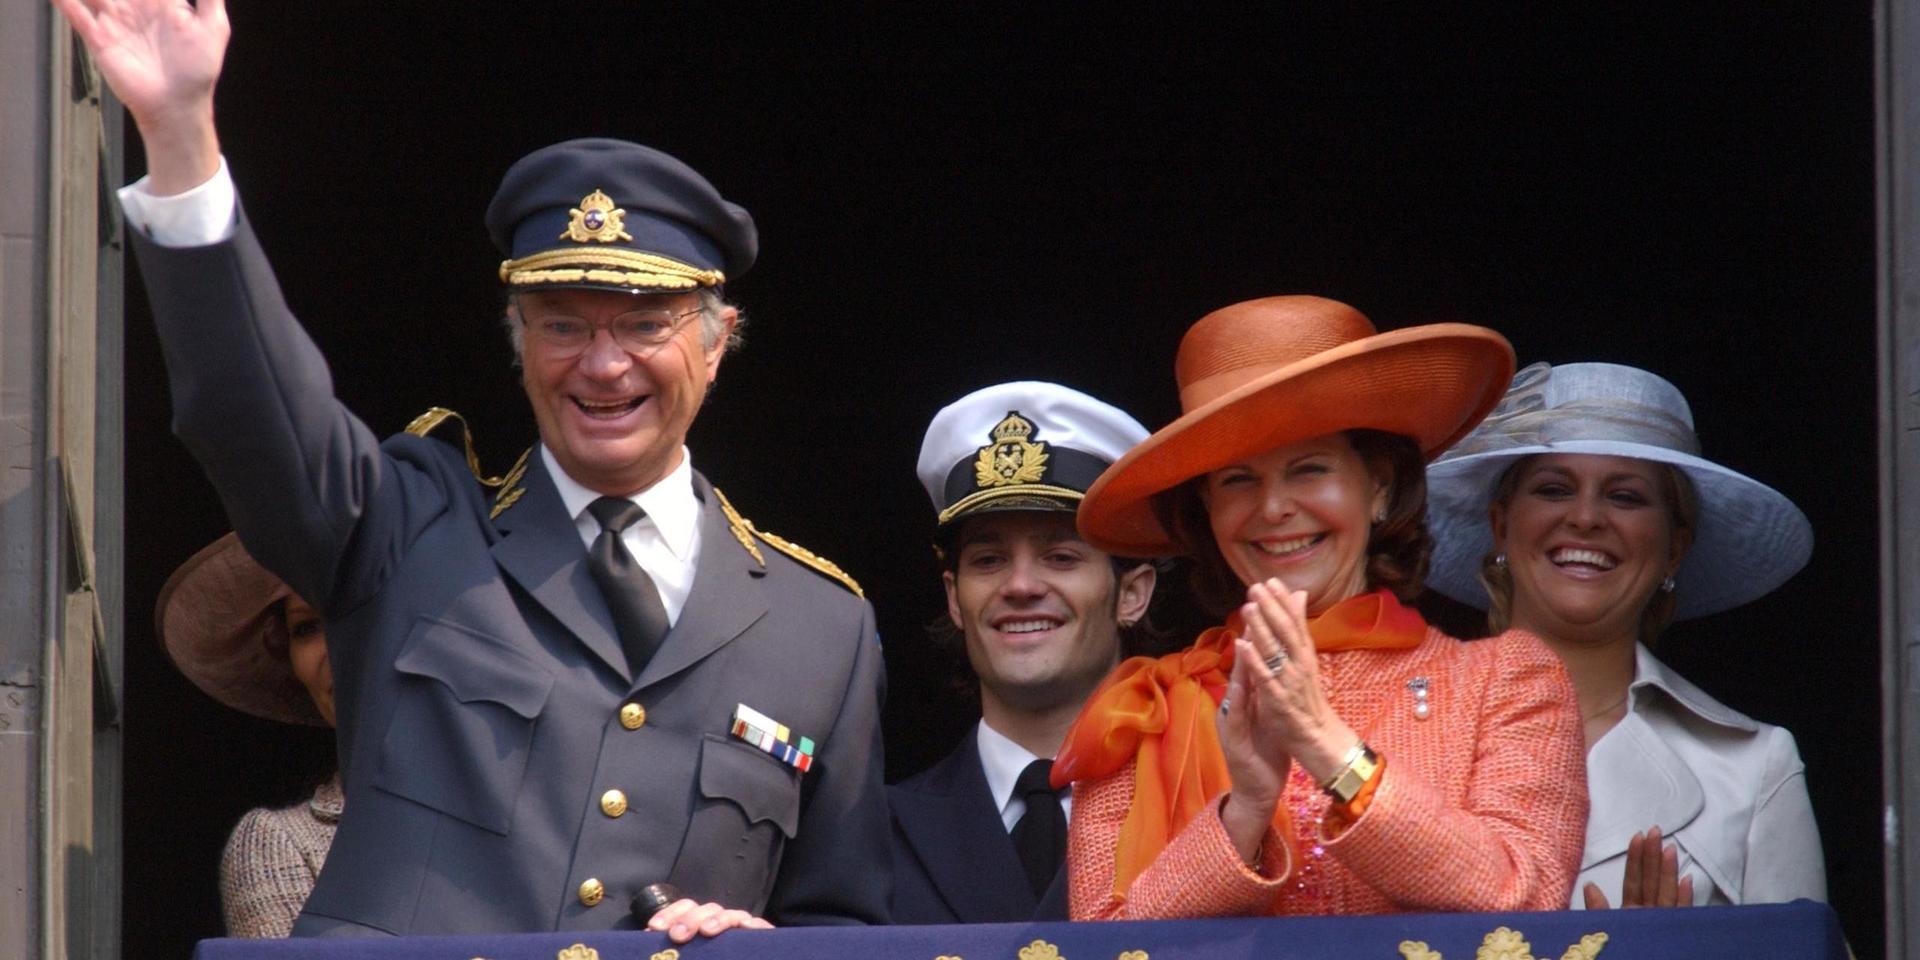 Ännu en jämn födelsedag. Kungen vinkar från slottsbalkongen tillsammans med kronprinsessan Victoria, prins Carl Philip, drottning Silvia och prinsessan Madeleine under den traditionsenliga vaktavlösningen på kungens 60-årsdag 2006.